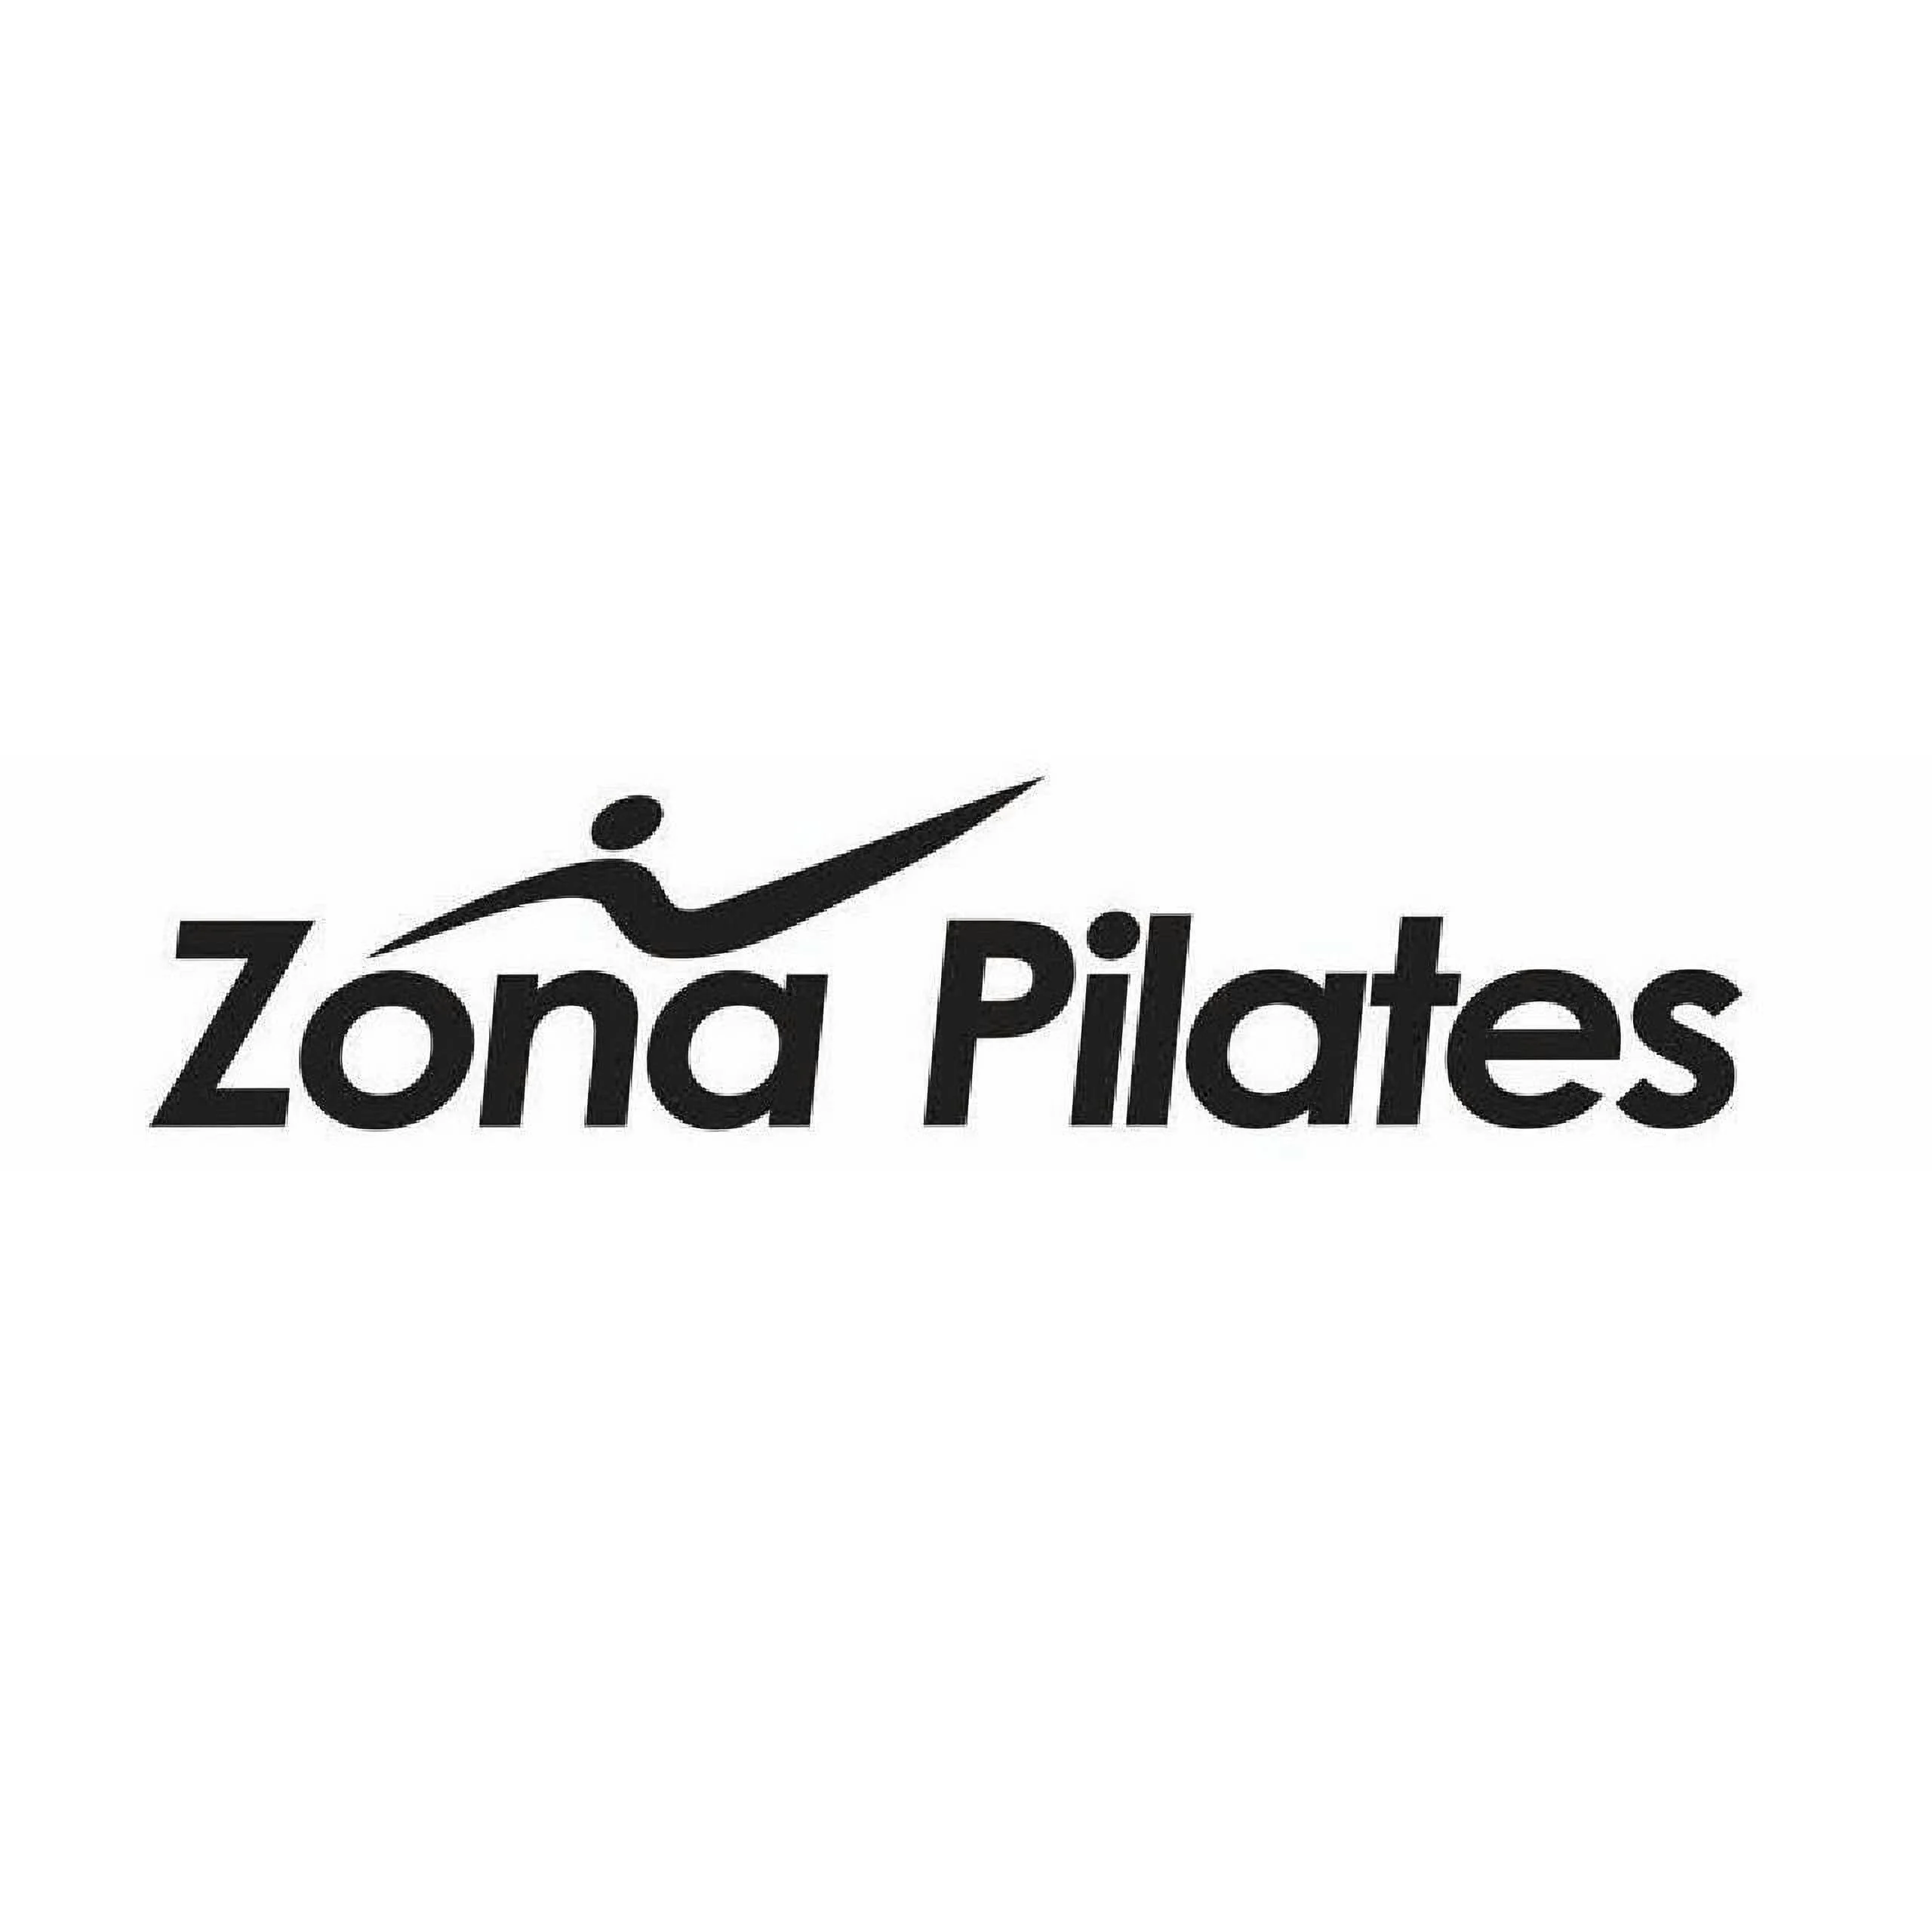 Pilates-zona-pilates-8176